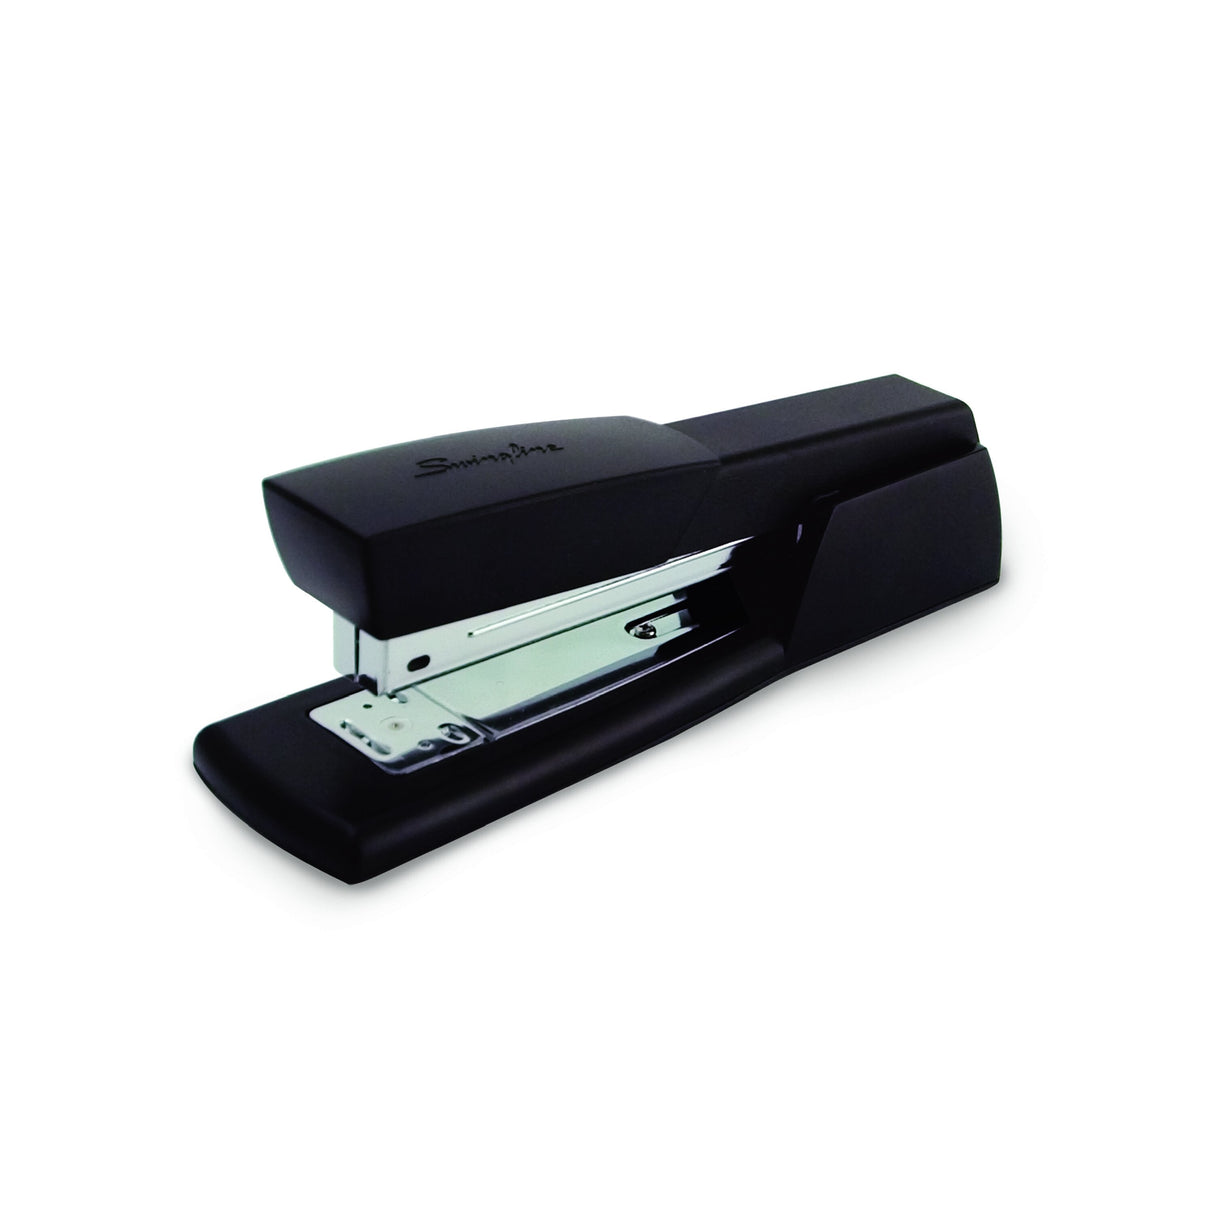 Swingline Desk Stapler Model 20B - Black, 20 Sheets